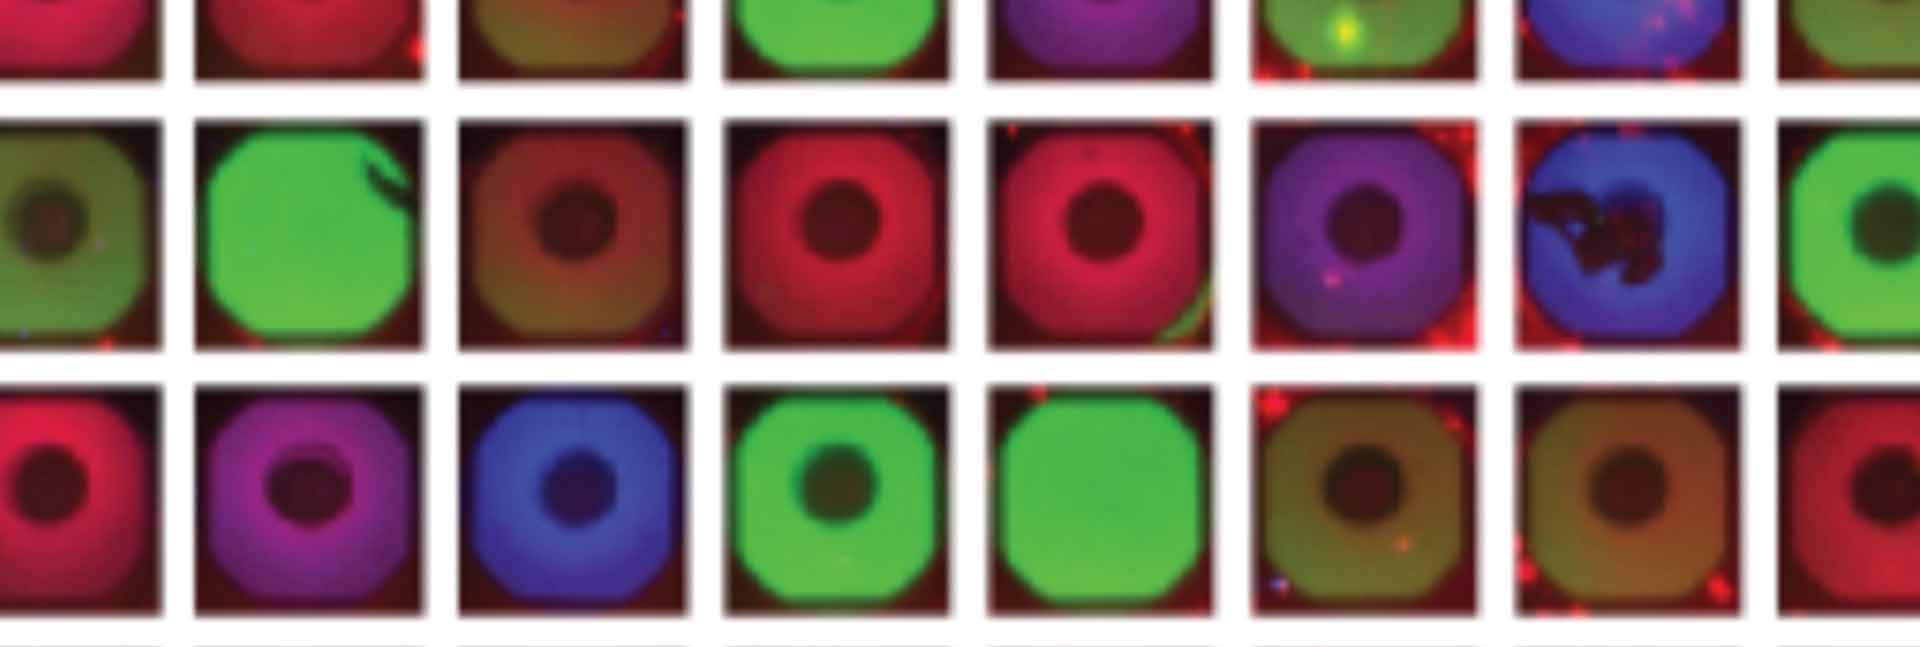 דימות פלואורסצנטי של התאים המלאכותיים על-גבי השבב. הבדלים בהרכב הגנים בין תא לתא יצרו הבדלי צבעים המשקפים שלבים שונים בתהליכי הבנייה של חלקי הנגיף